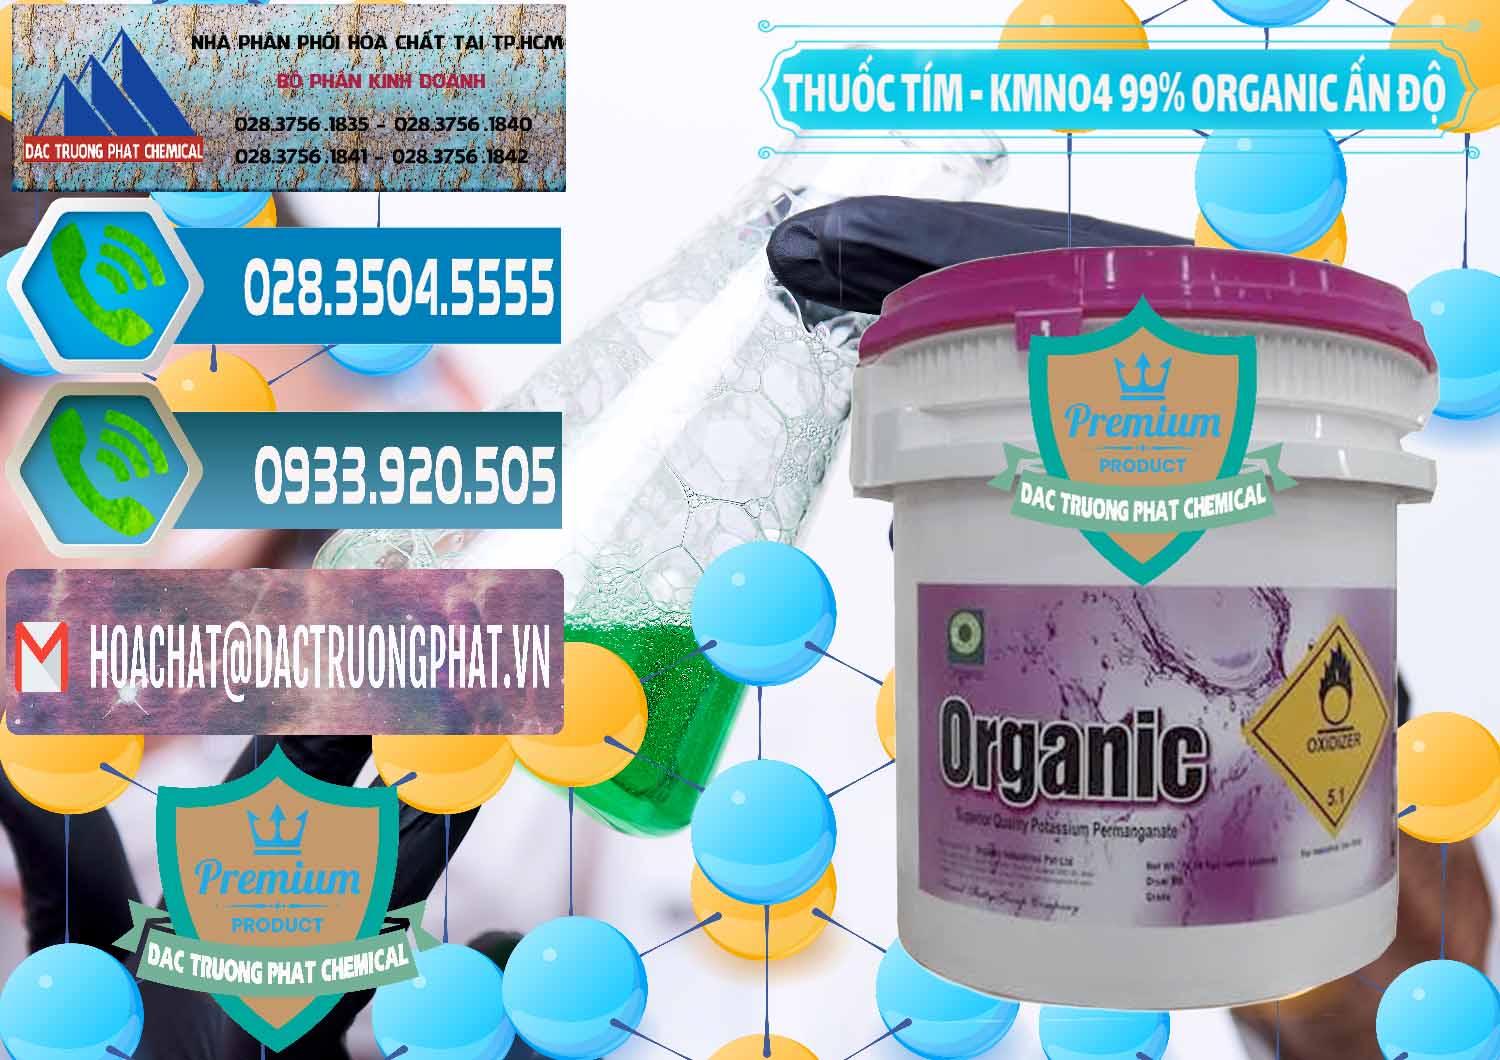 Đơn vị nhập khẩu - bán Thuốc Tím - KMNO4 99% Organic Ấn Độ India - 0216 - Công ty chuyên kinh doanh - phân phối hóa chất tại TP.HCM - congtyhoachat.net